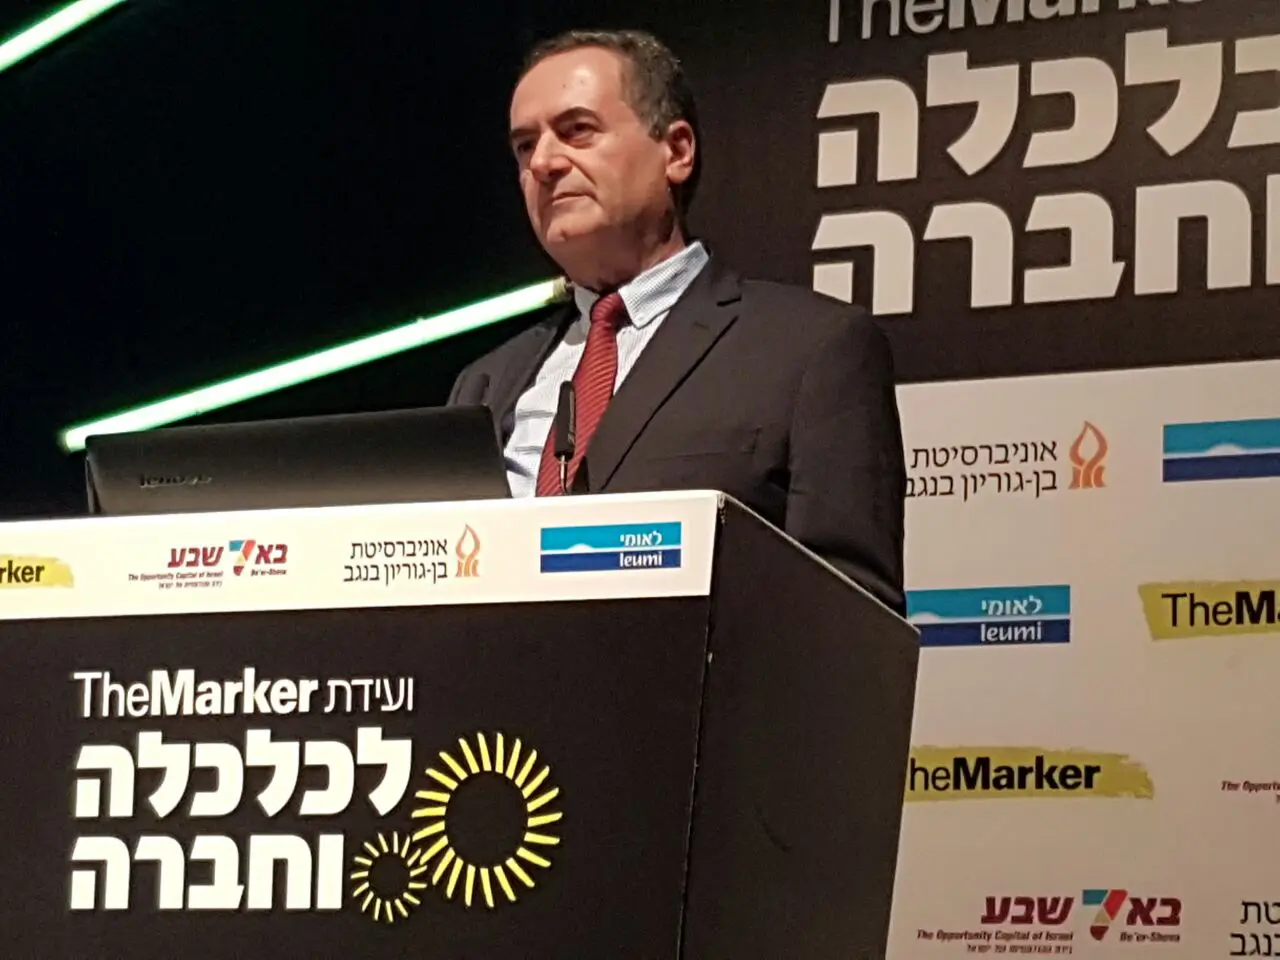 שר התחבורה ישראל כץ בוועידת דה מרקר לעסקים וחברה, באר שבע, 22 בנובמבר 2016